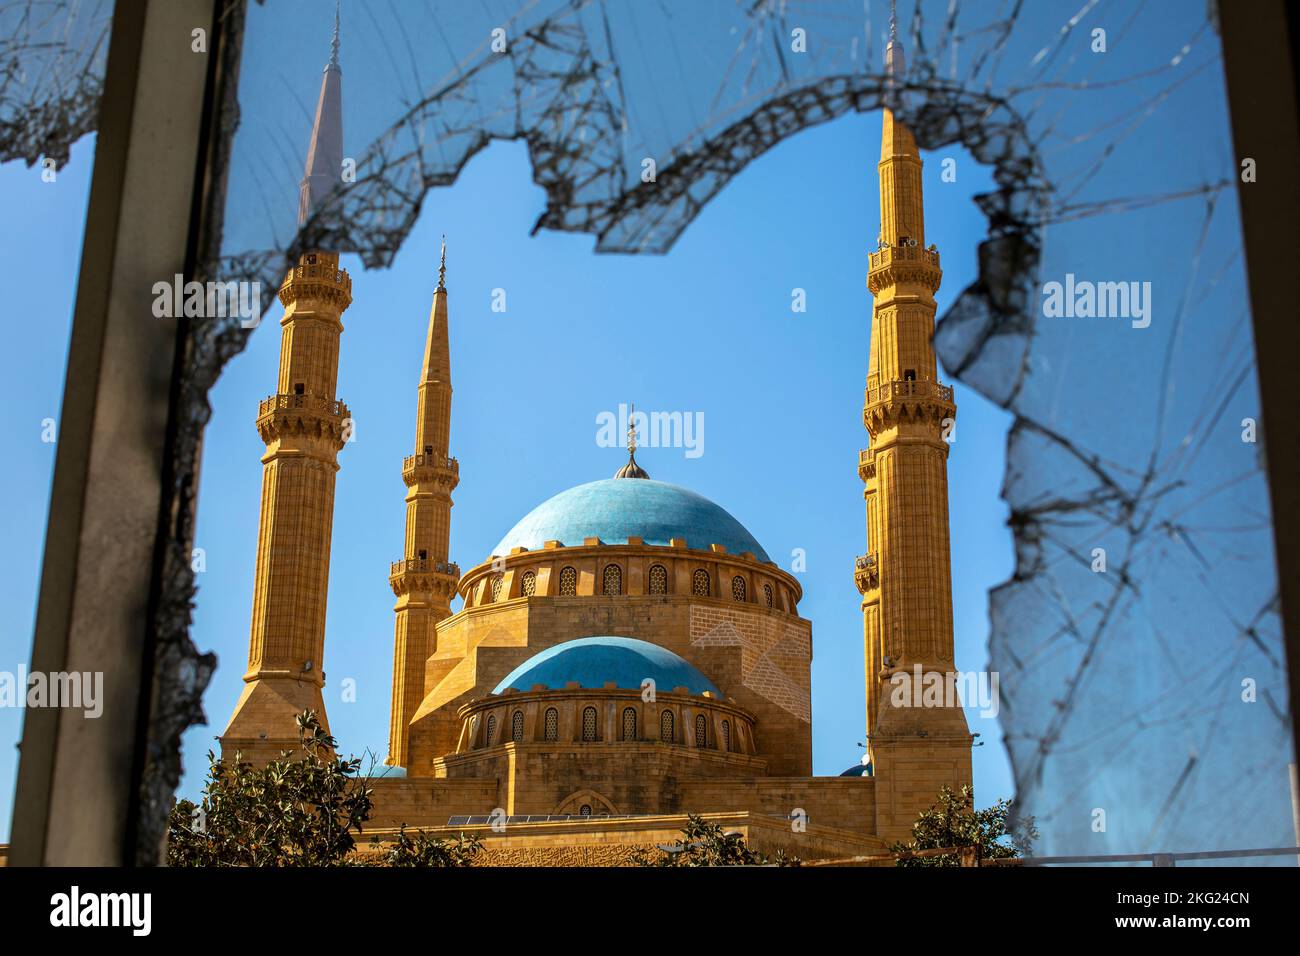 Mohammed al-Amine sunni mosque seen through a broken window Beirut, Lebanon Stock Photo